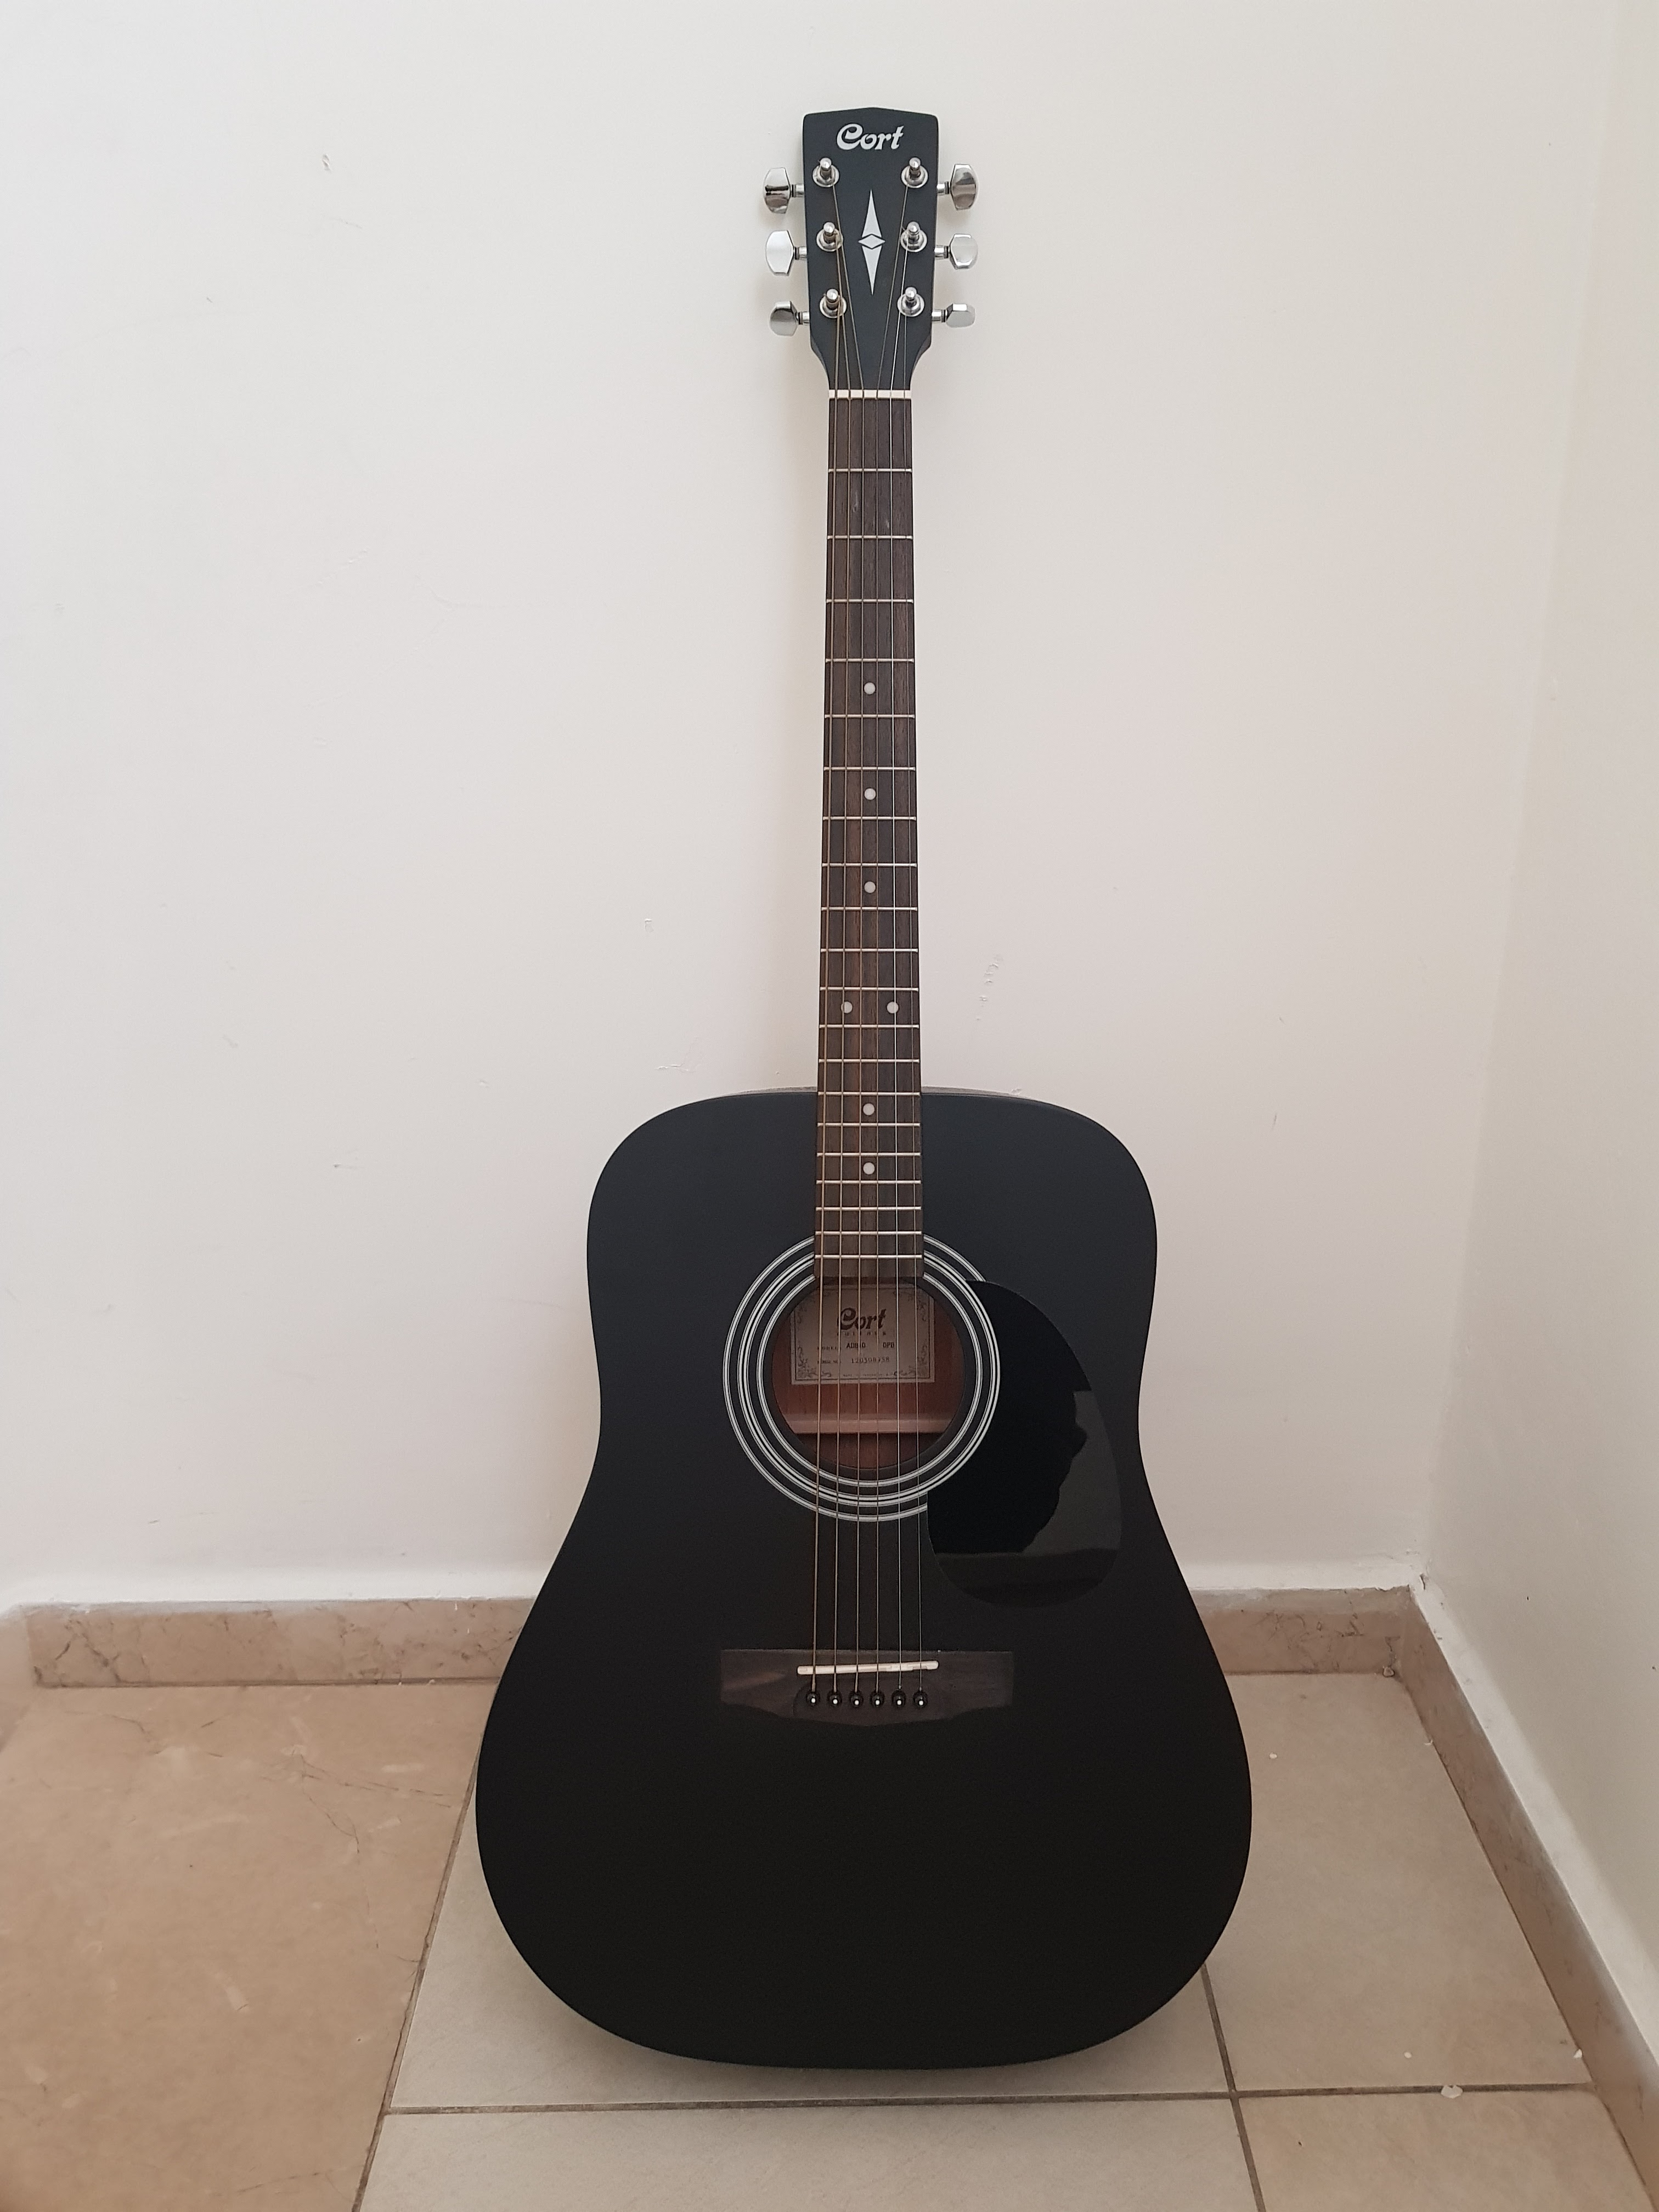 תמונה 1 ,גיטרה אקוסטית  למכירה בביתר עילית כלי נגינה  גיטרה אקוסטית